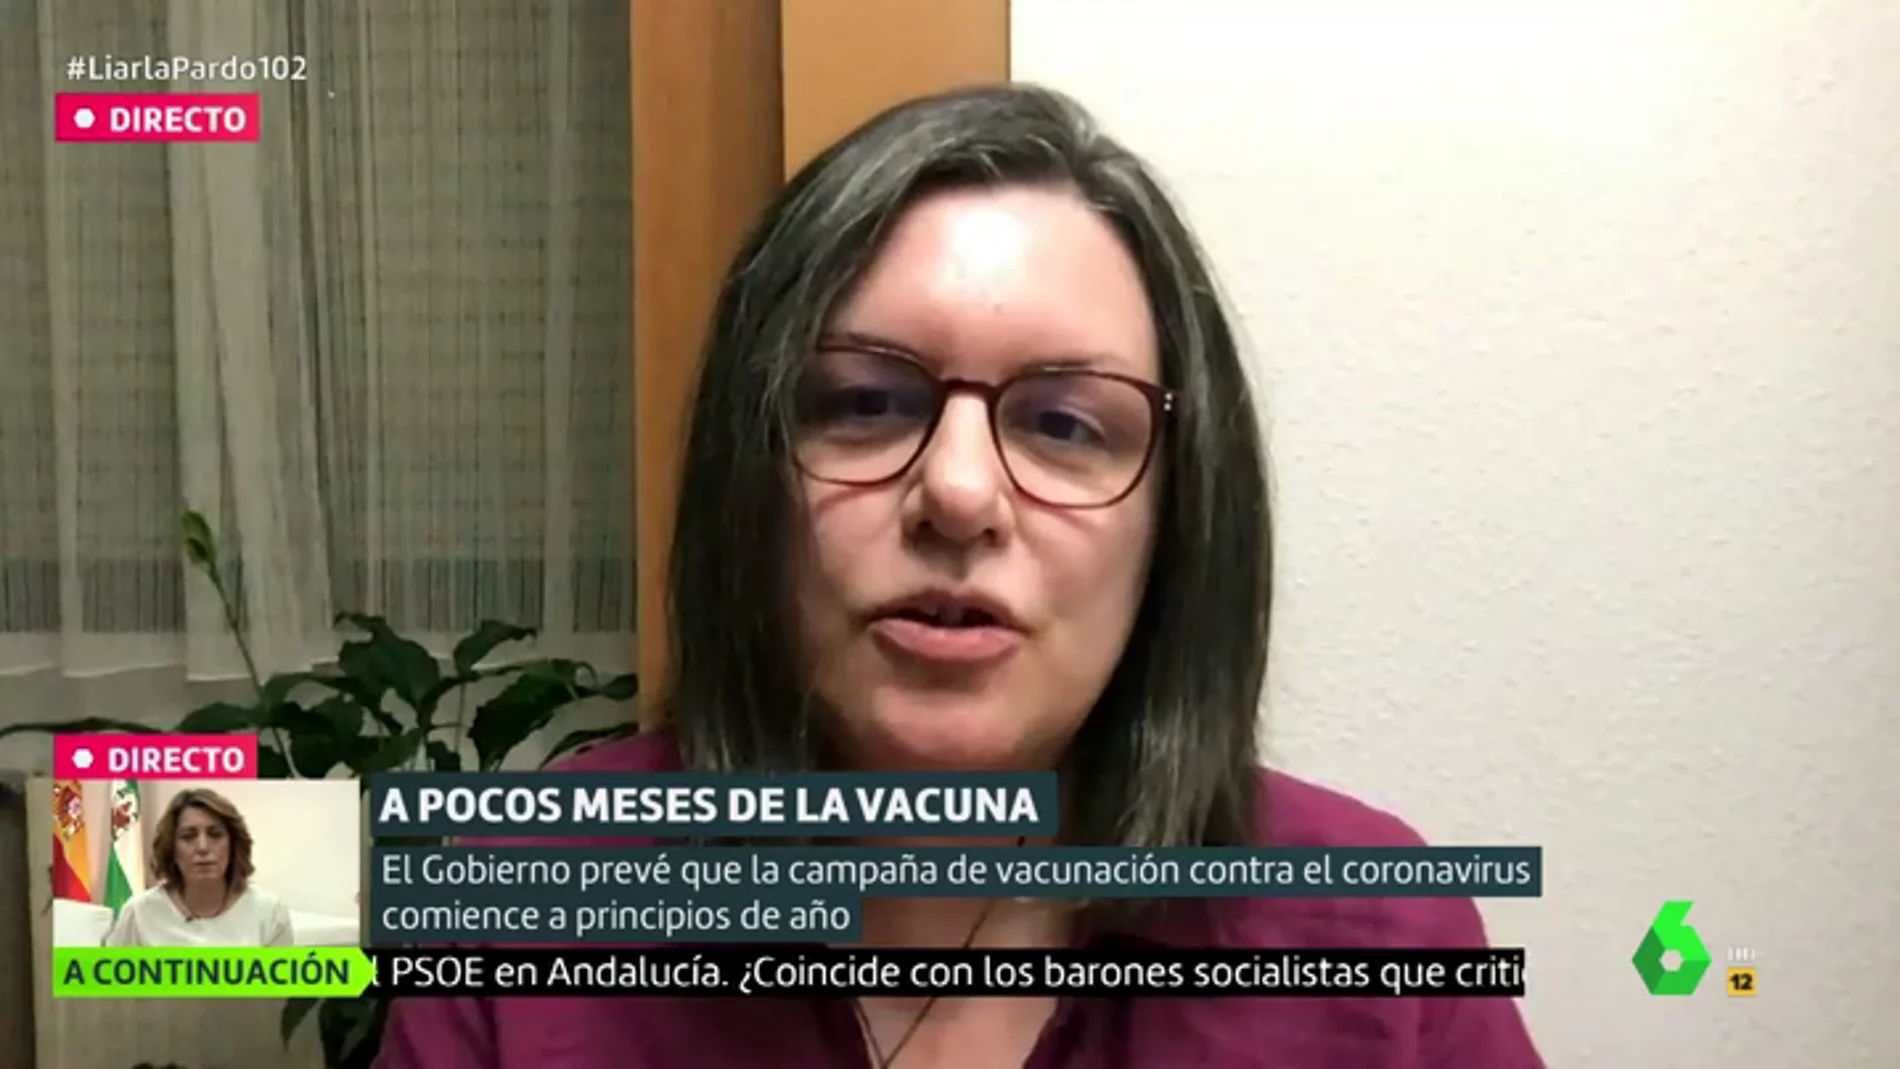 La investigadora Sonia Zúñiga hace un llamamiento a la prudencia: "Es probable que la vacuna no evite la infección"